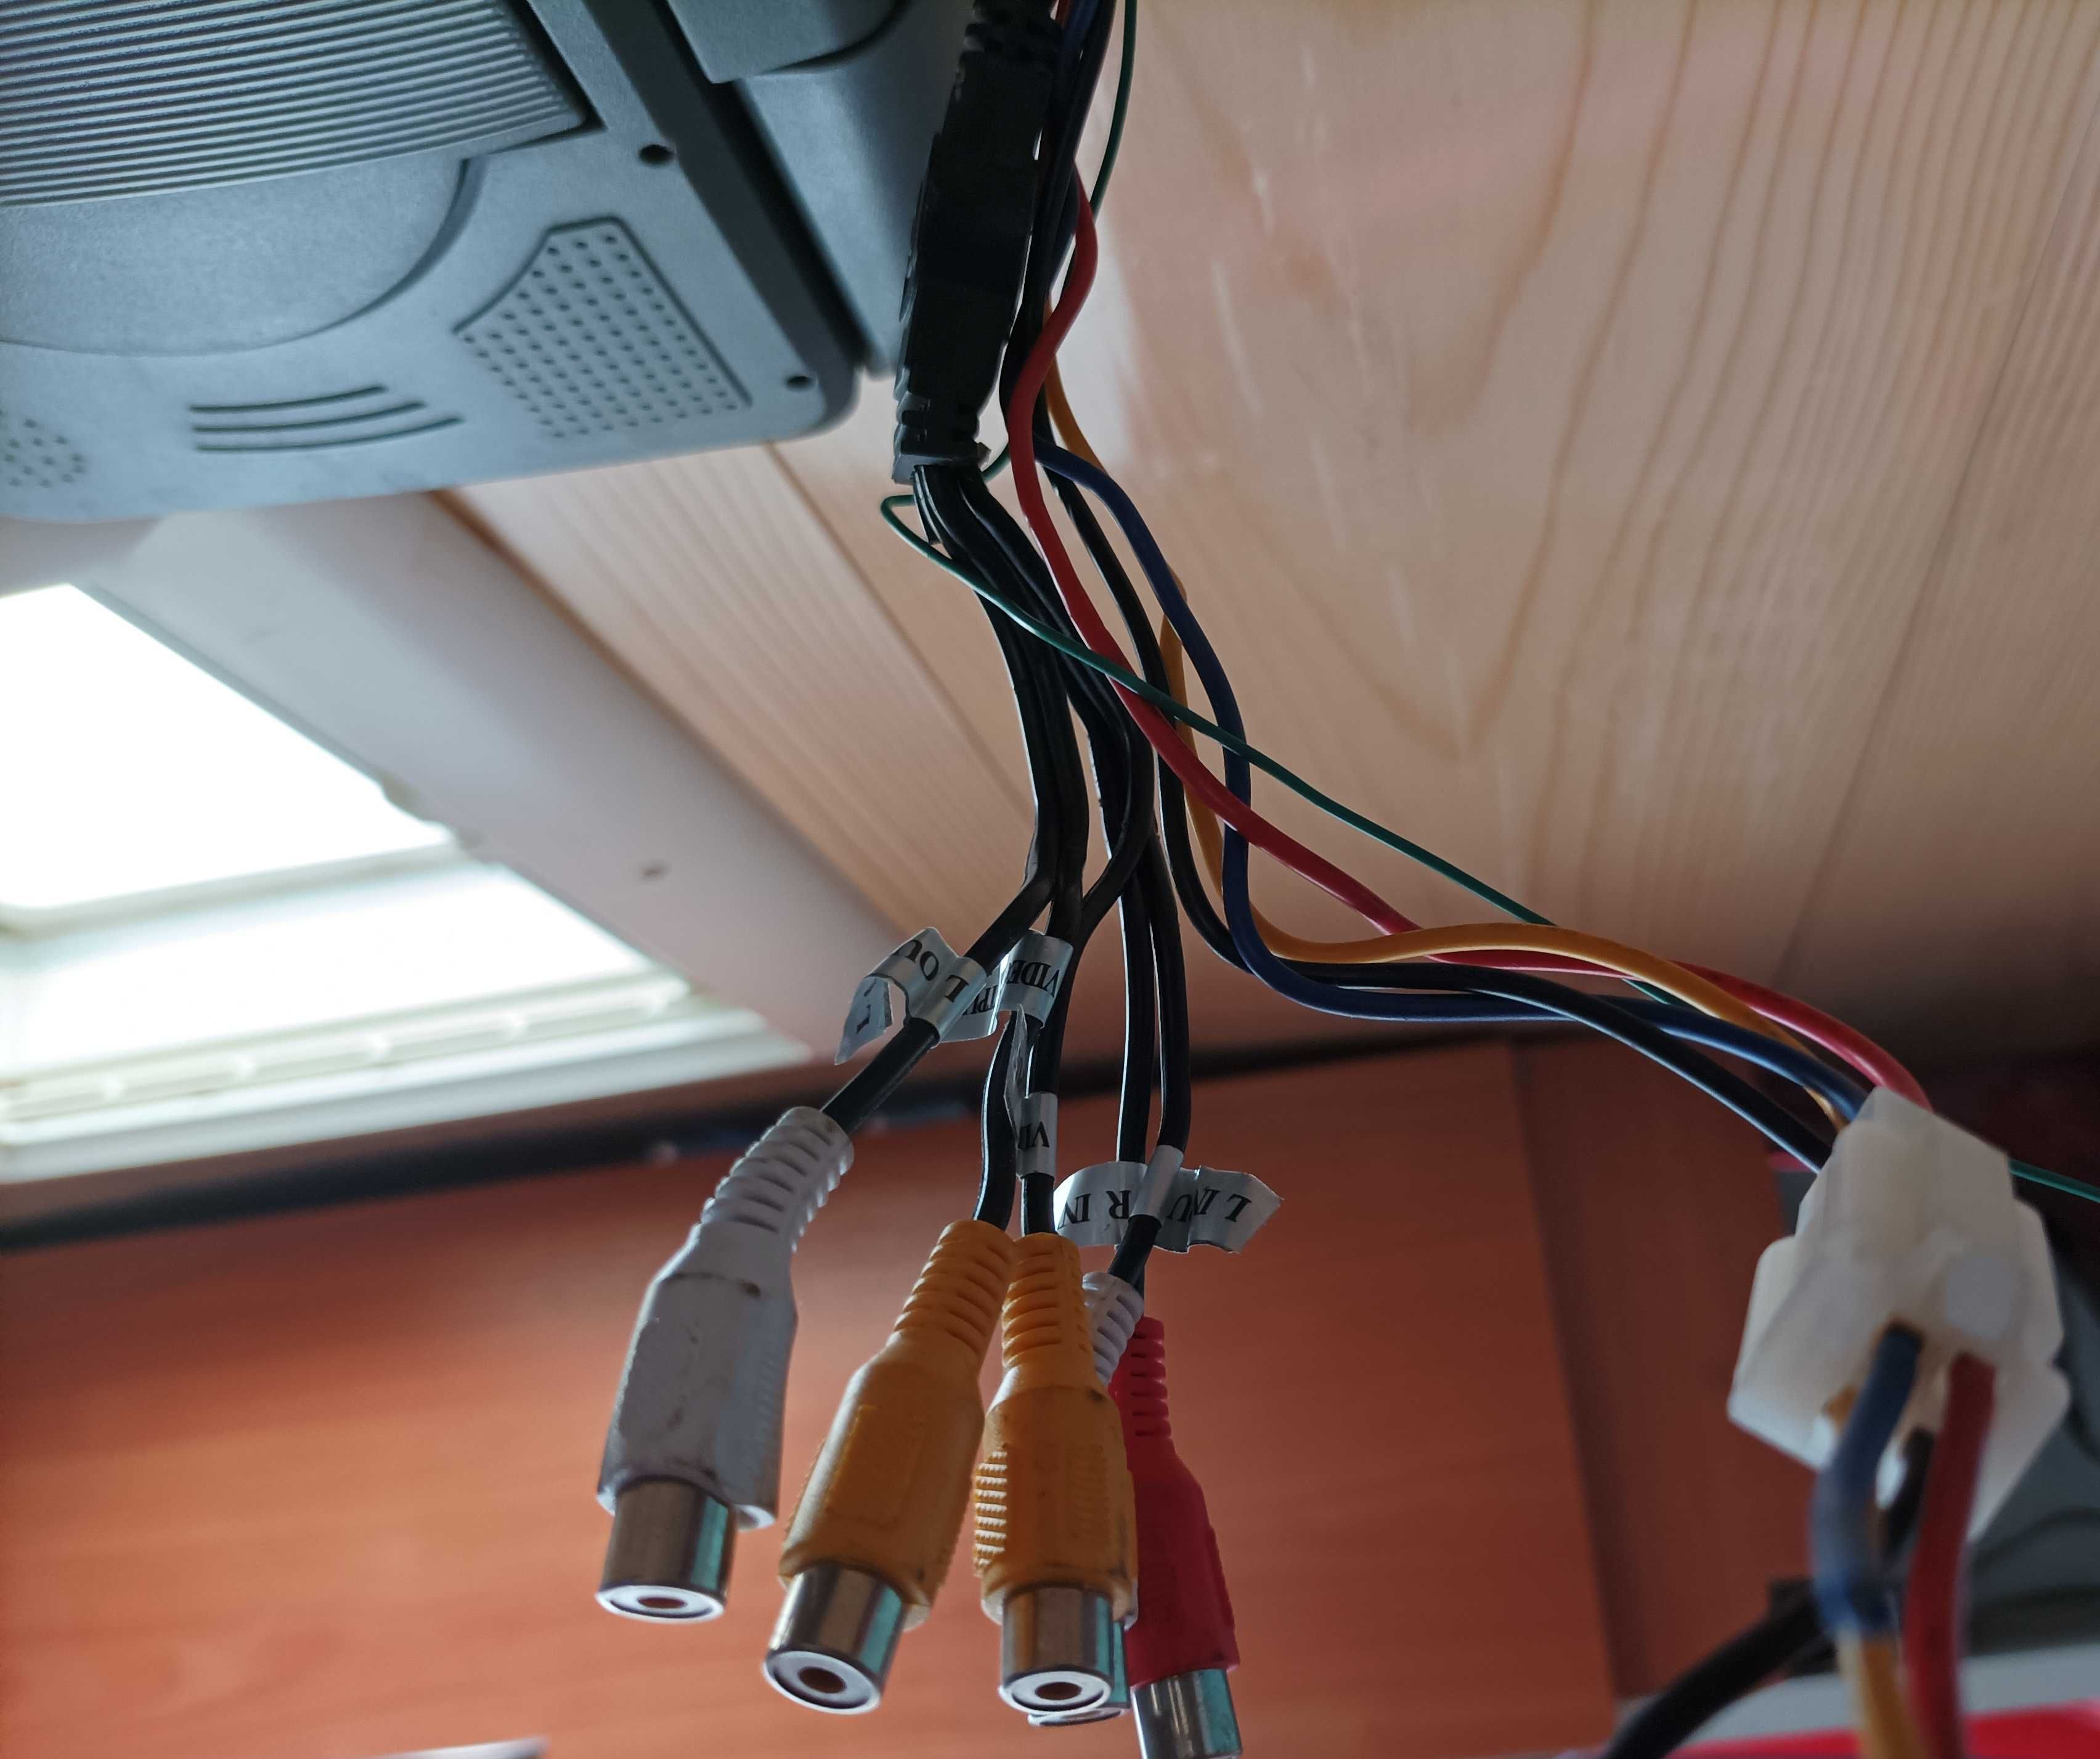 9' монитор с DVD USB за автомобил таван